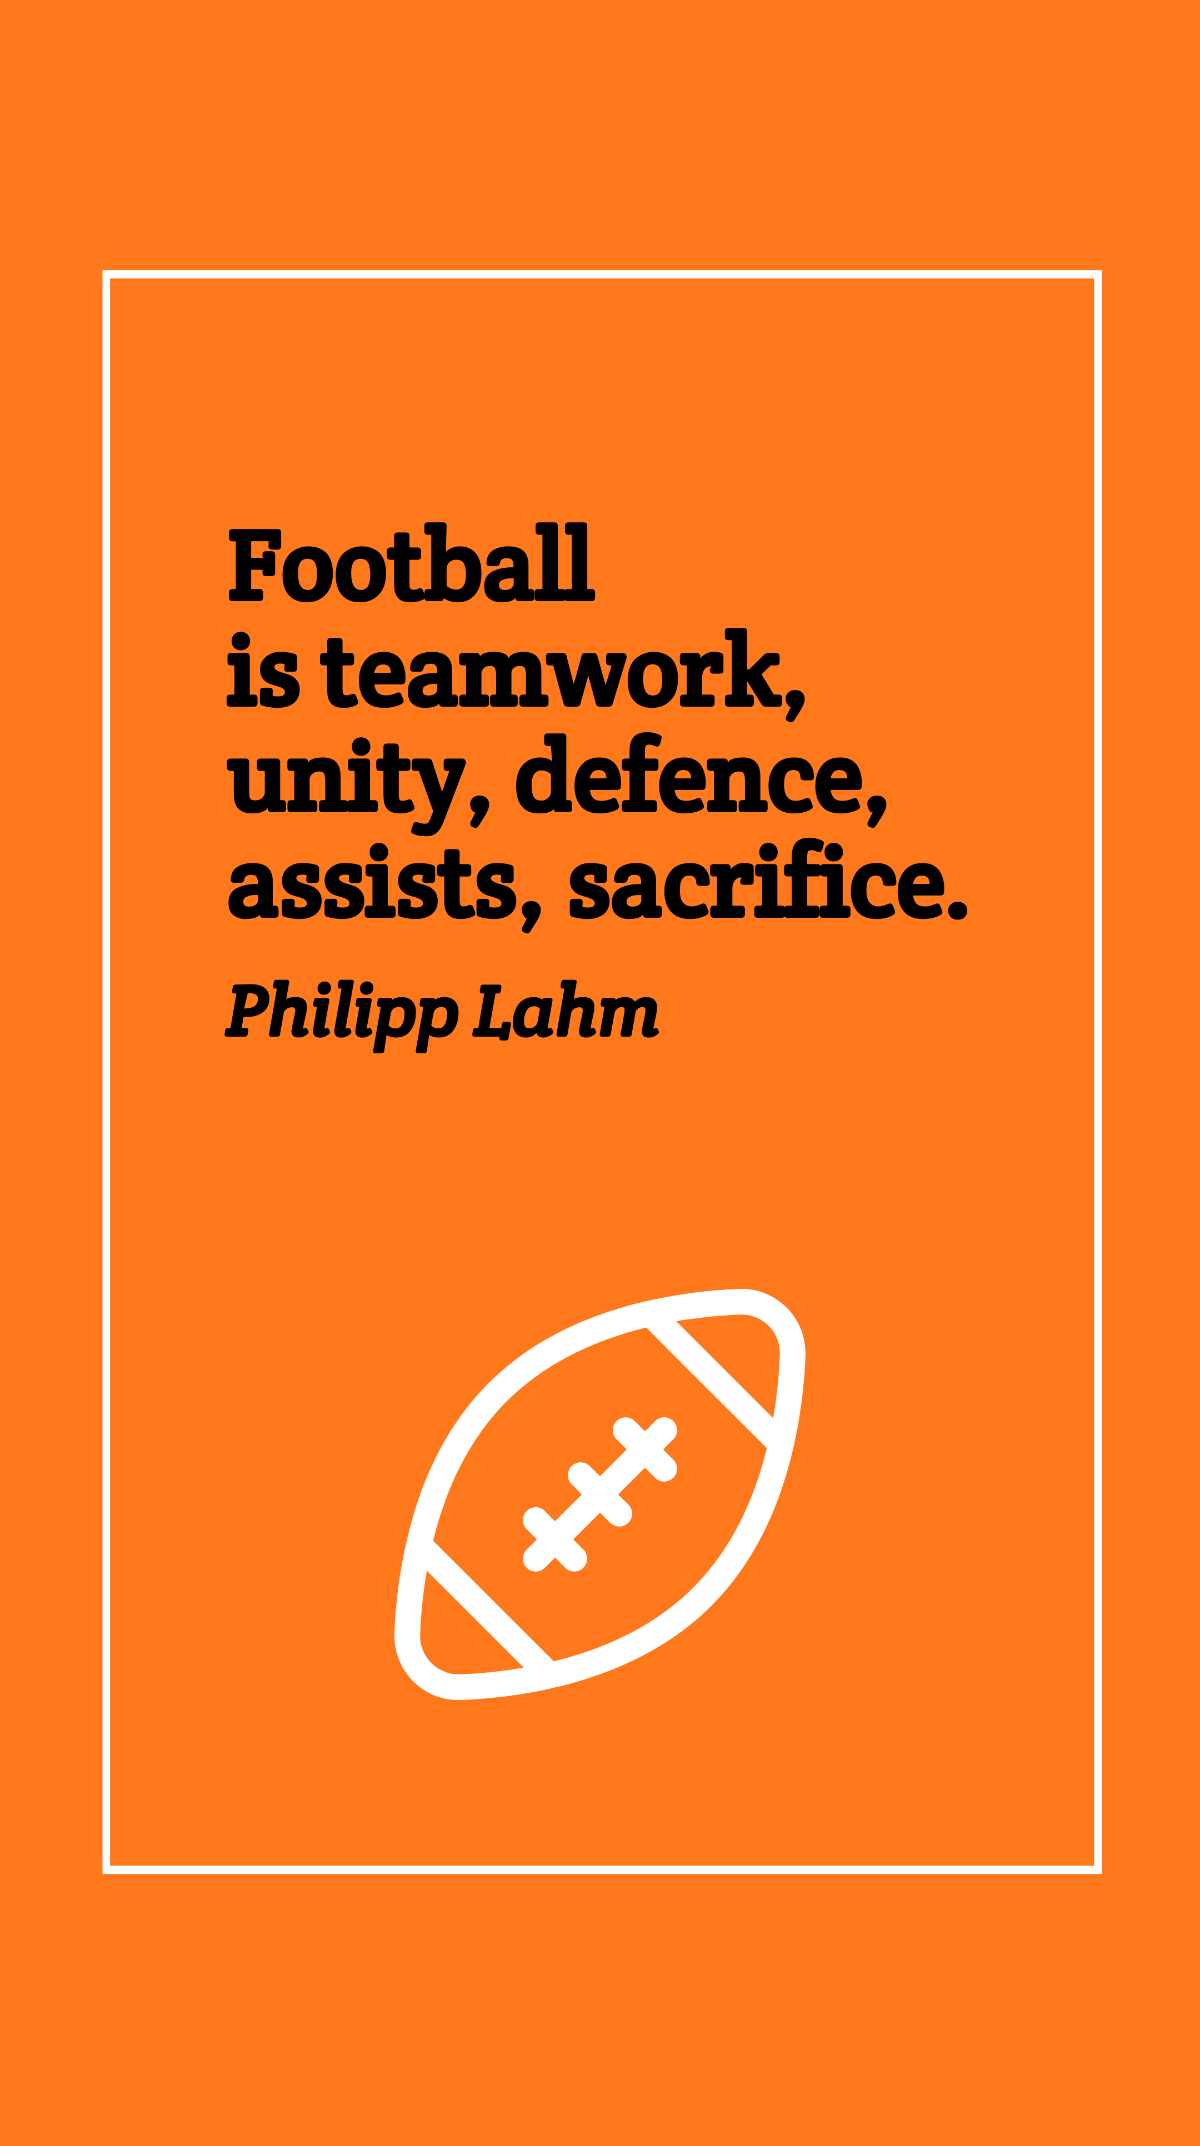 Philipp Lahm - Football is teamwork, unity, defence, assists, sacrifice. Template